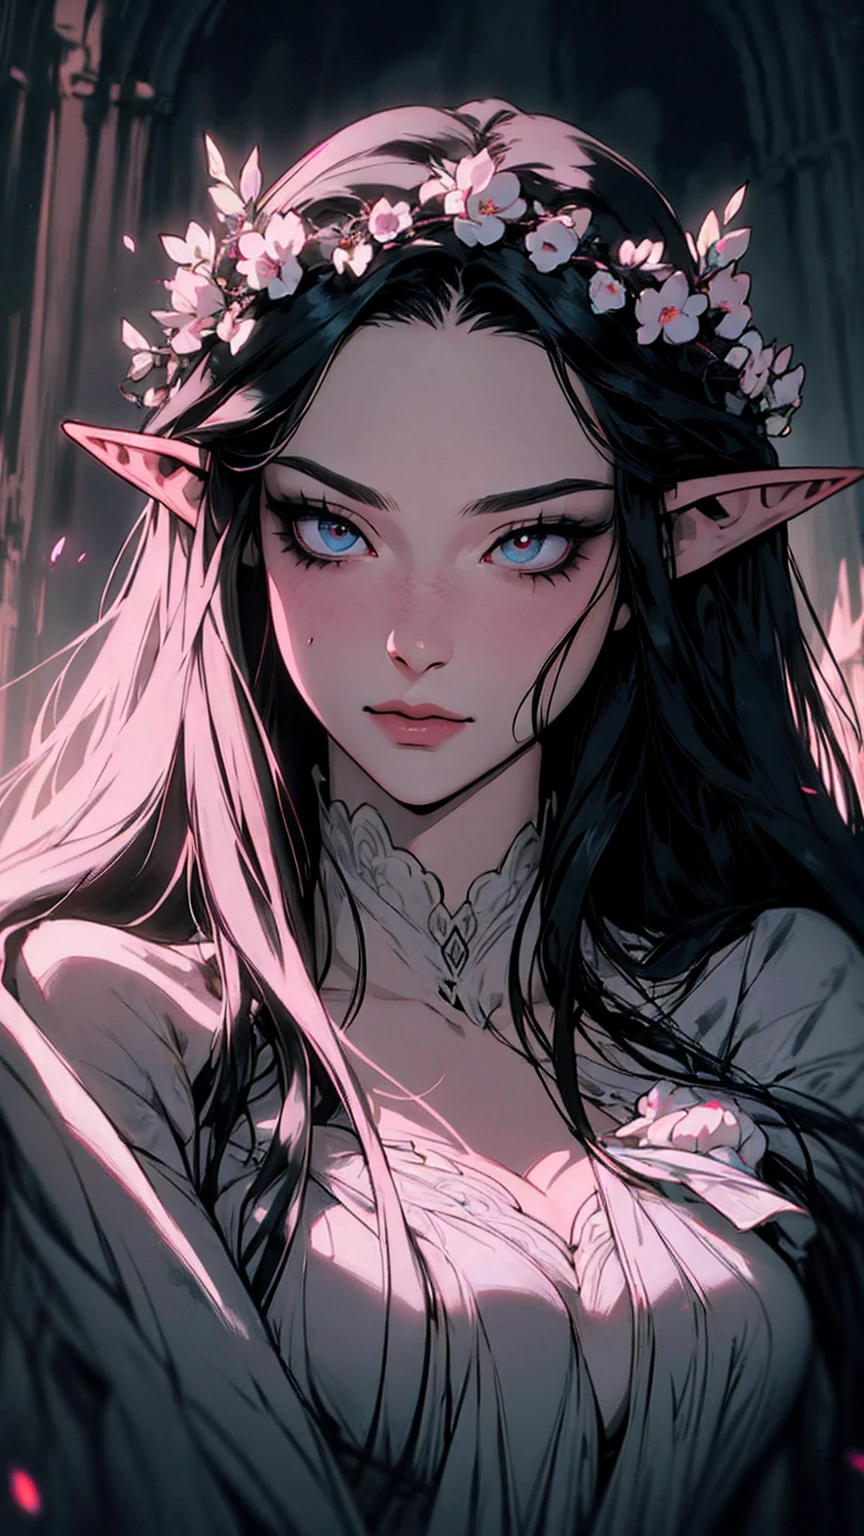 hyper-réaliste d&#39;une femme mystérieuse aux cheveux noirs flottants, oreilles d&#39;elfe,  yeux d&#39;opale perçants, et une délicate couronne florale, sourire délicat,  Haut du corps